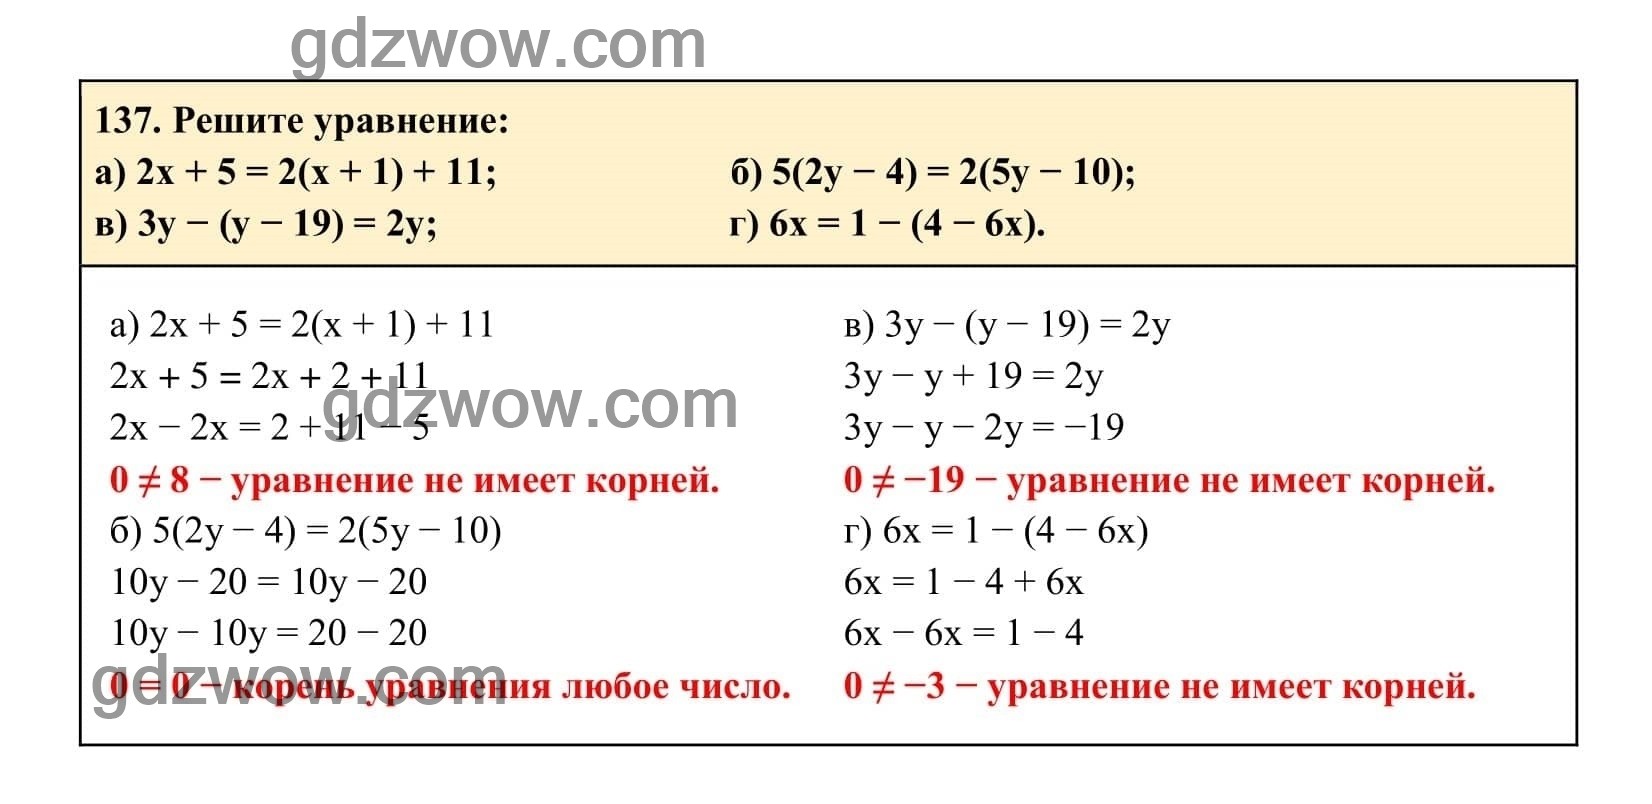 Упражнение 137 - ГДЗ по Алгебре 7 класс Учебник Макарычев (решебник) - GDZwow